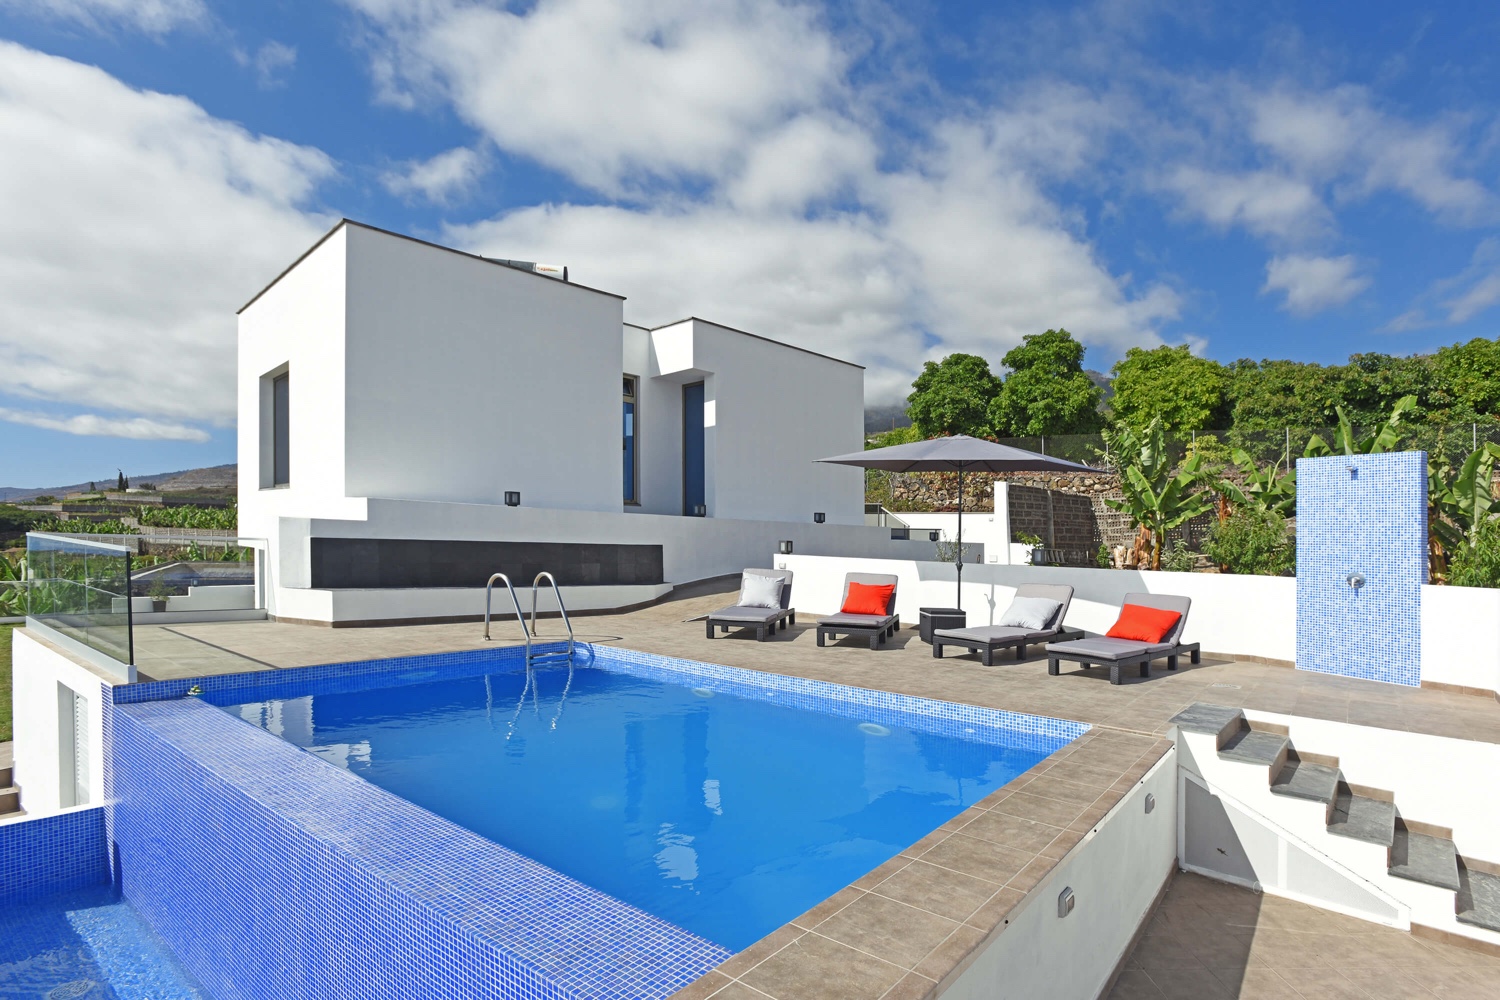 Modernt fritidshus med högkvalitativ utrustning och uppvärmd privat pool på ön La Palma